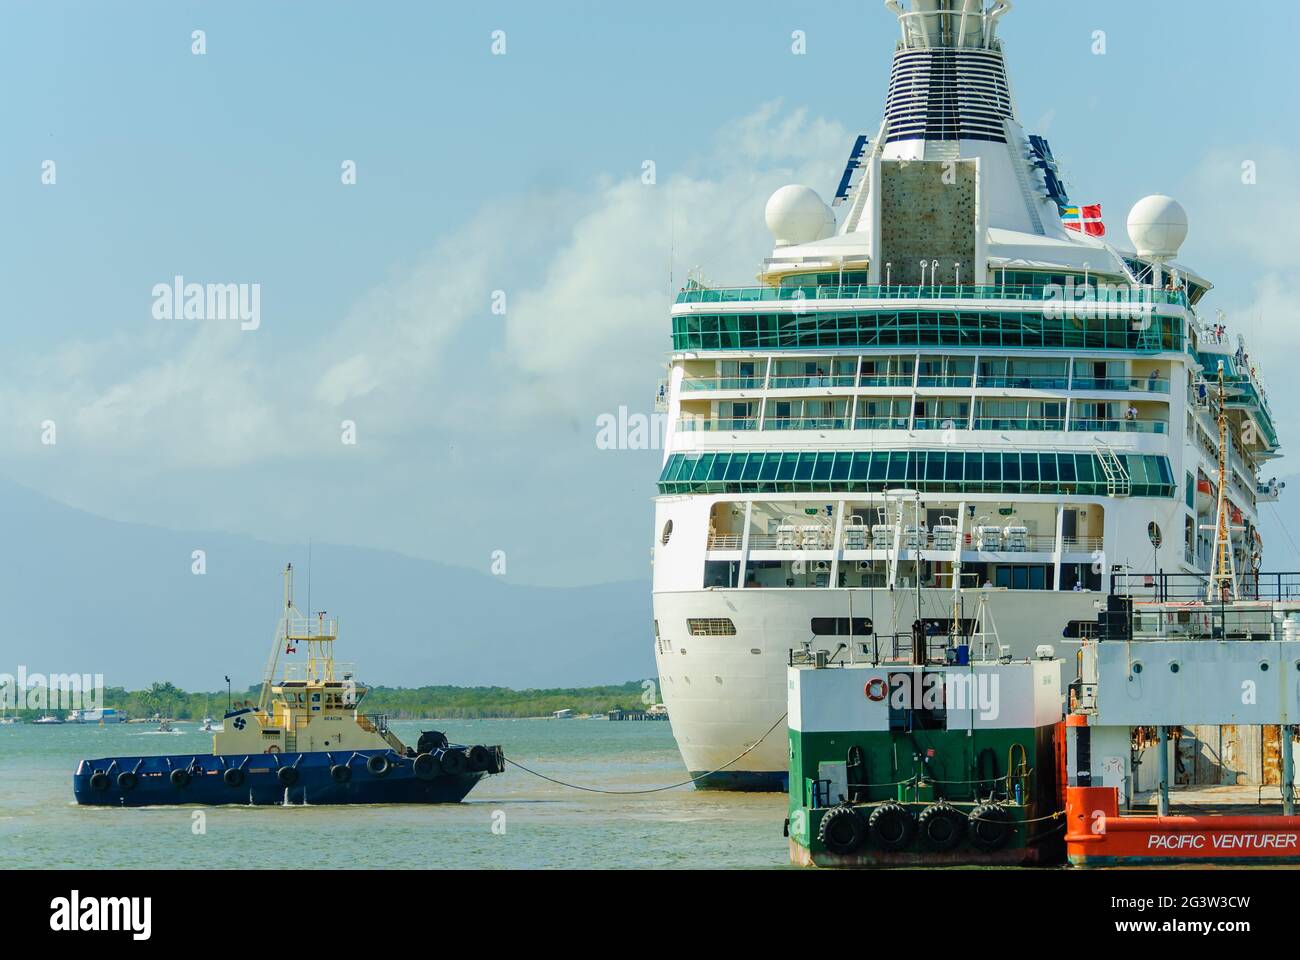 Der Kreuzfahrtliner Rhapsody of the Seas kommt in Ports North in Cairns, Queensland, Australien an und wird von einem Schlepper begleitet. Stockfoto